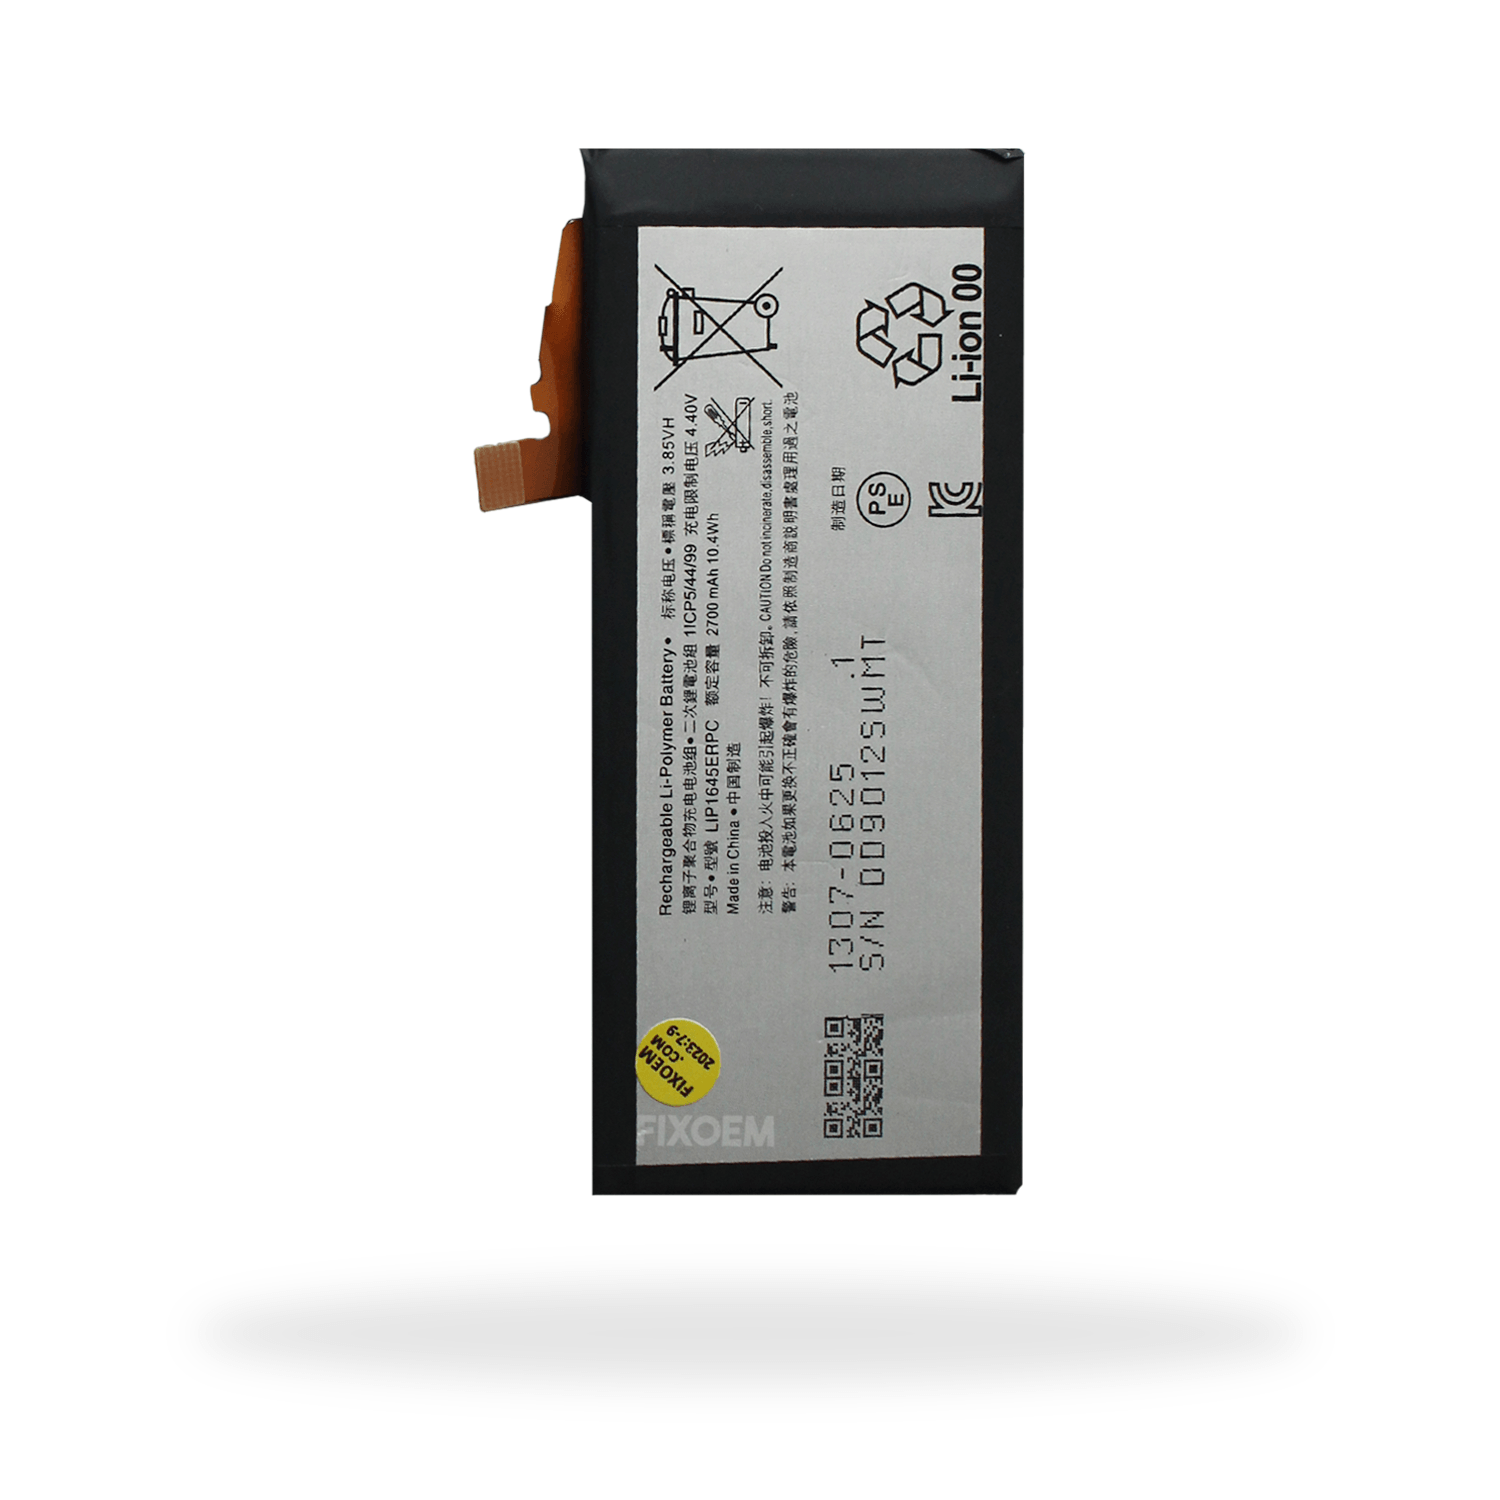 Bateria Sony Xz1 G8341 G8342 Lip1645Erpc. a solo $ 140.00 Refaccion y puestos celulares, refurbish y microelectronica.- FixOEM